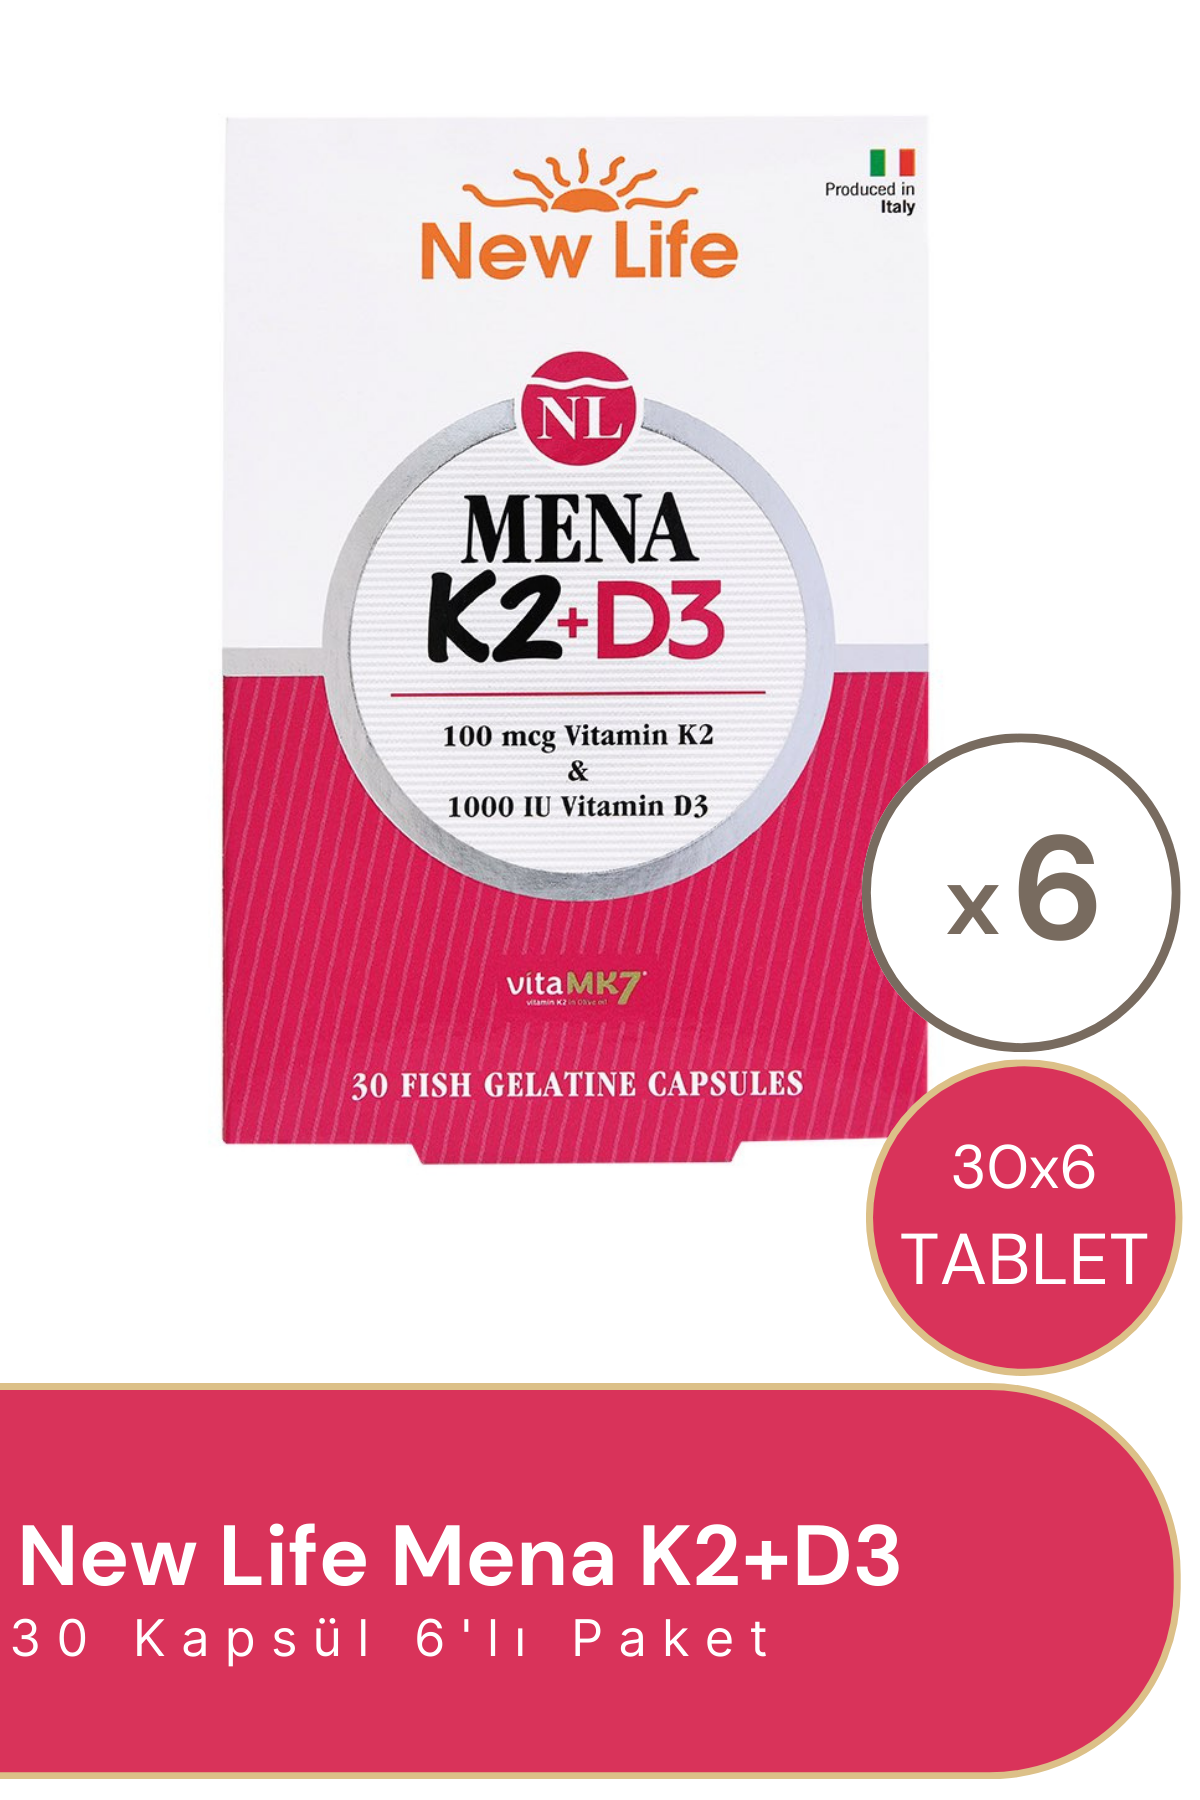 New Life Mena K2 + D3 30 Kapsül 6'lı Paket